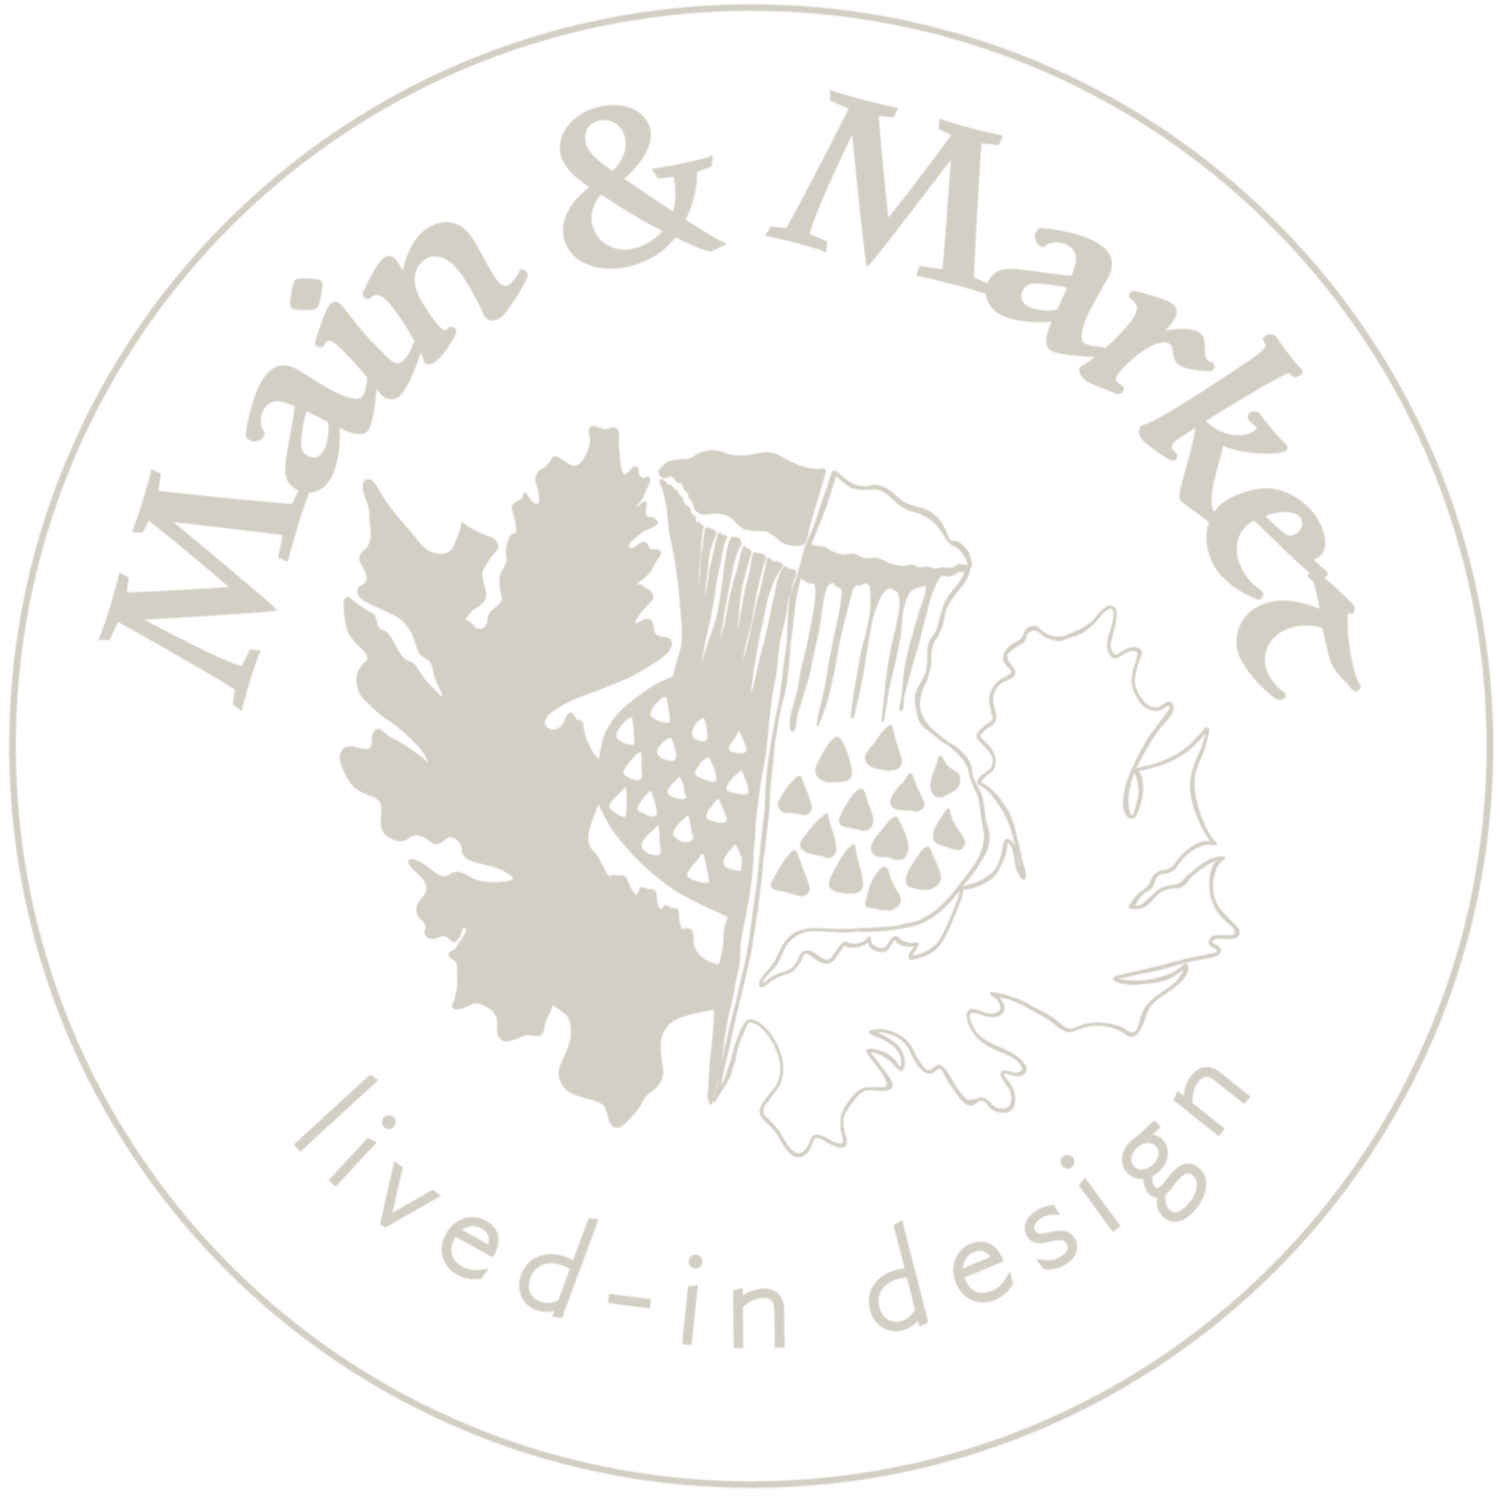 Main &amp; Market, LLC  &#39;lived-in&#39; design